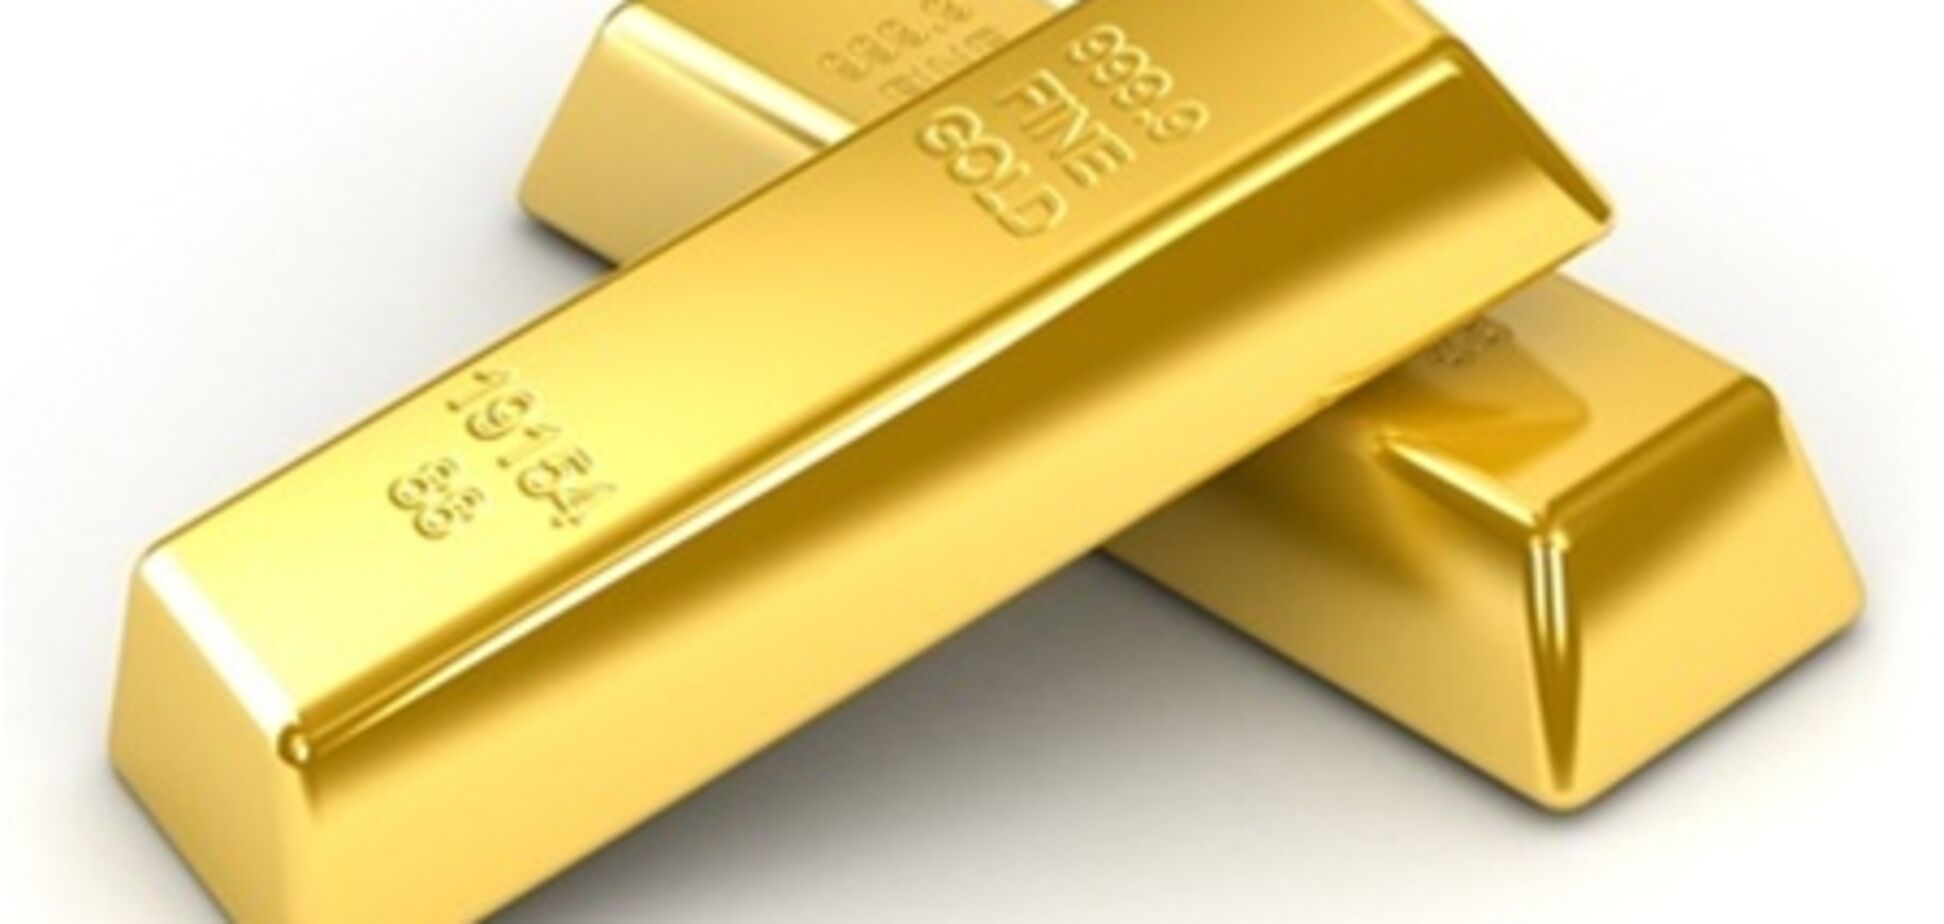 НБУ поднял золото в цене, 06 февраля 2013